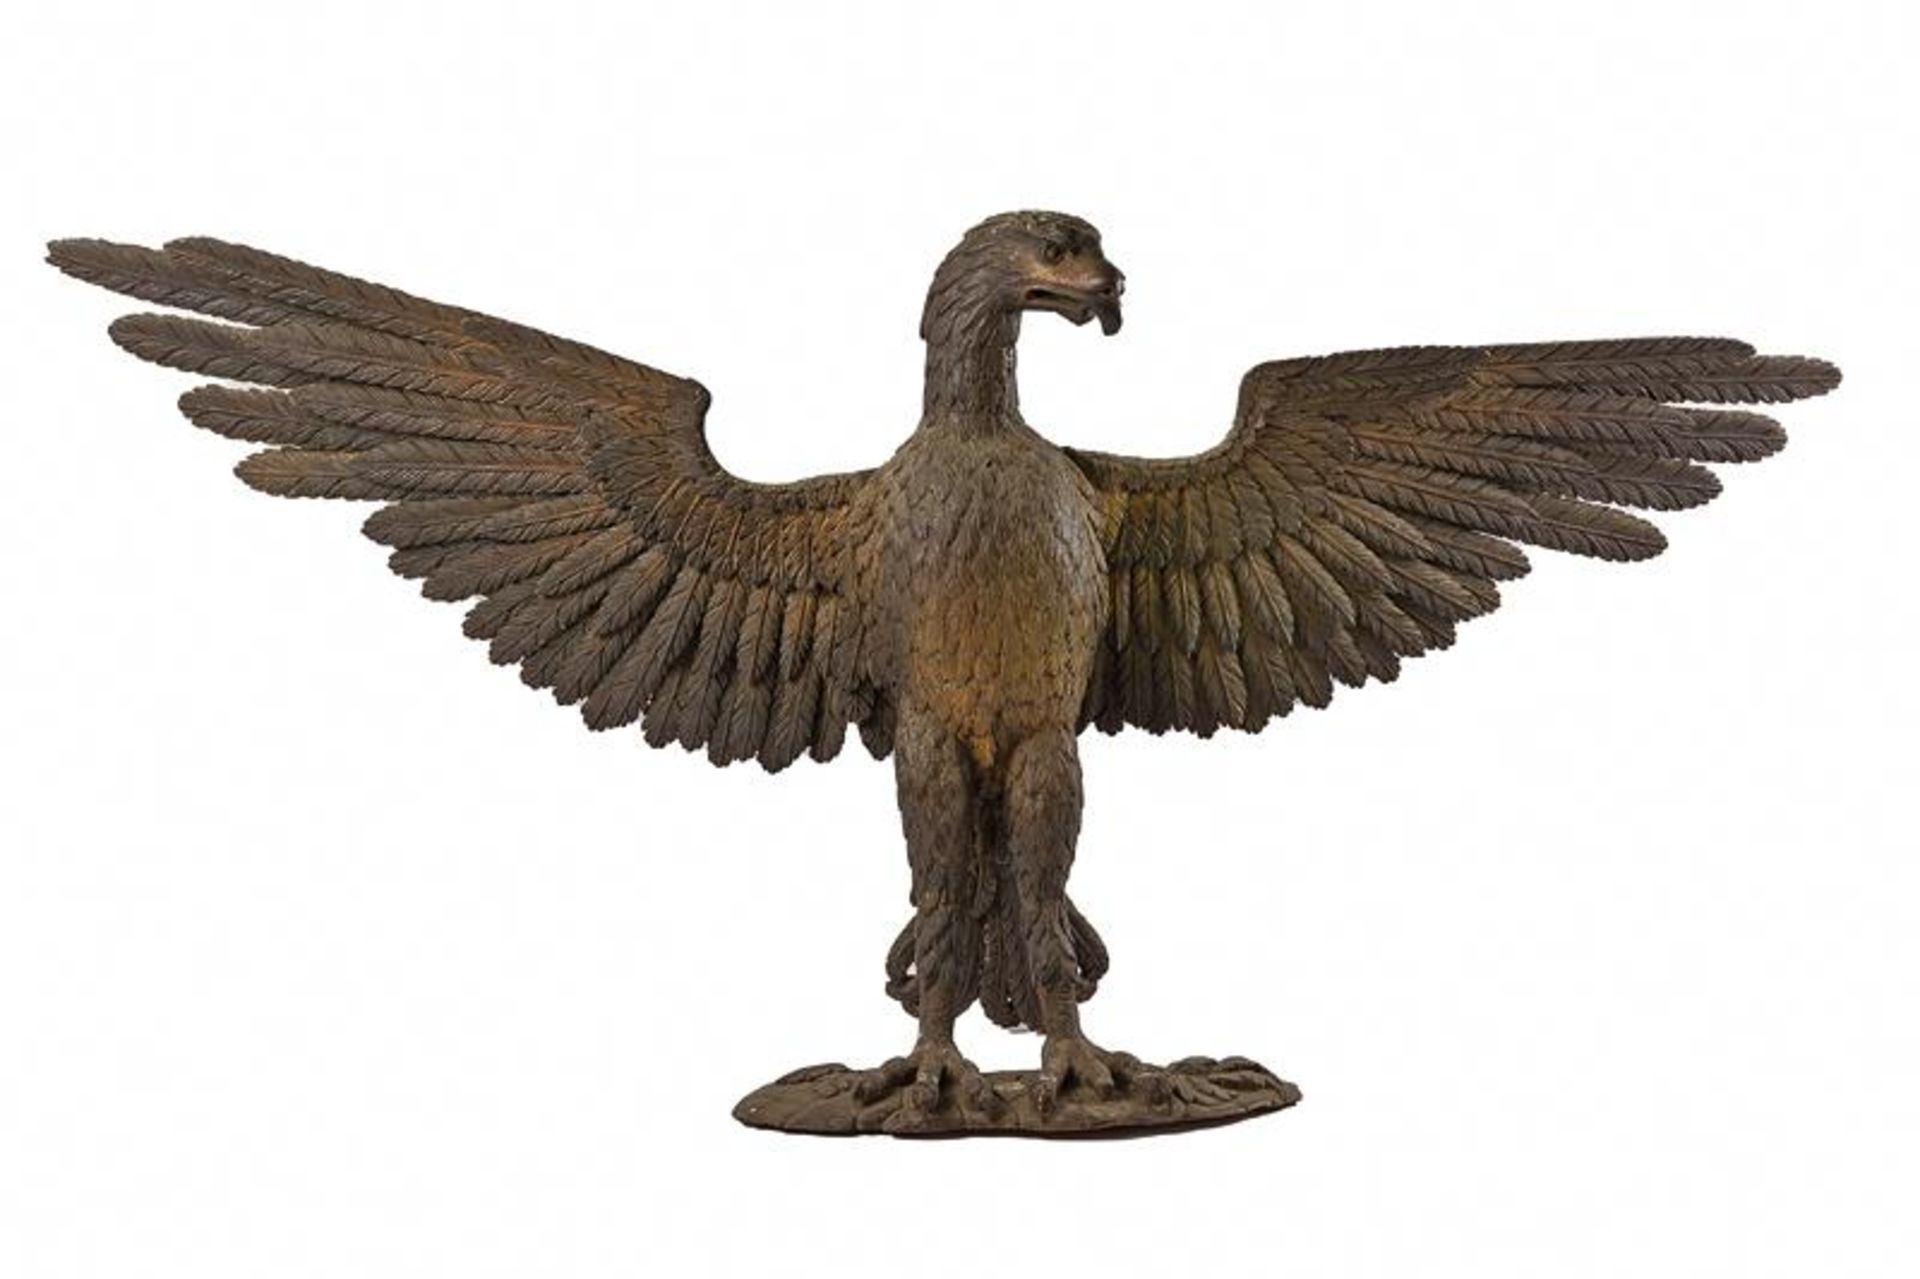 A big wooden sculpture of eagle